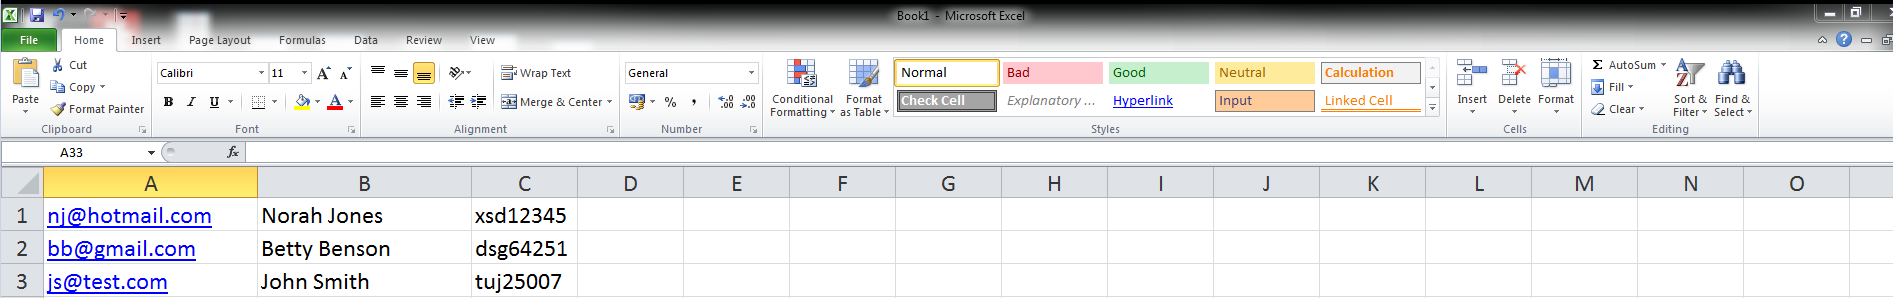 Beispiel einer Microsoft-Excel-Tabelle